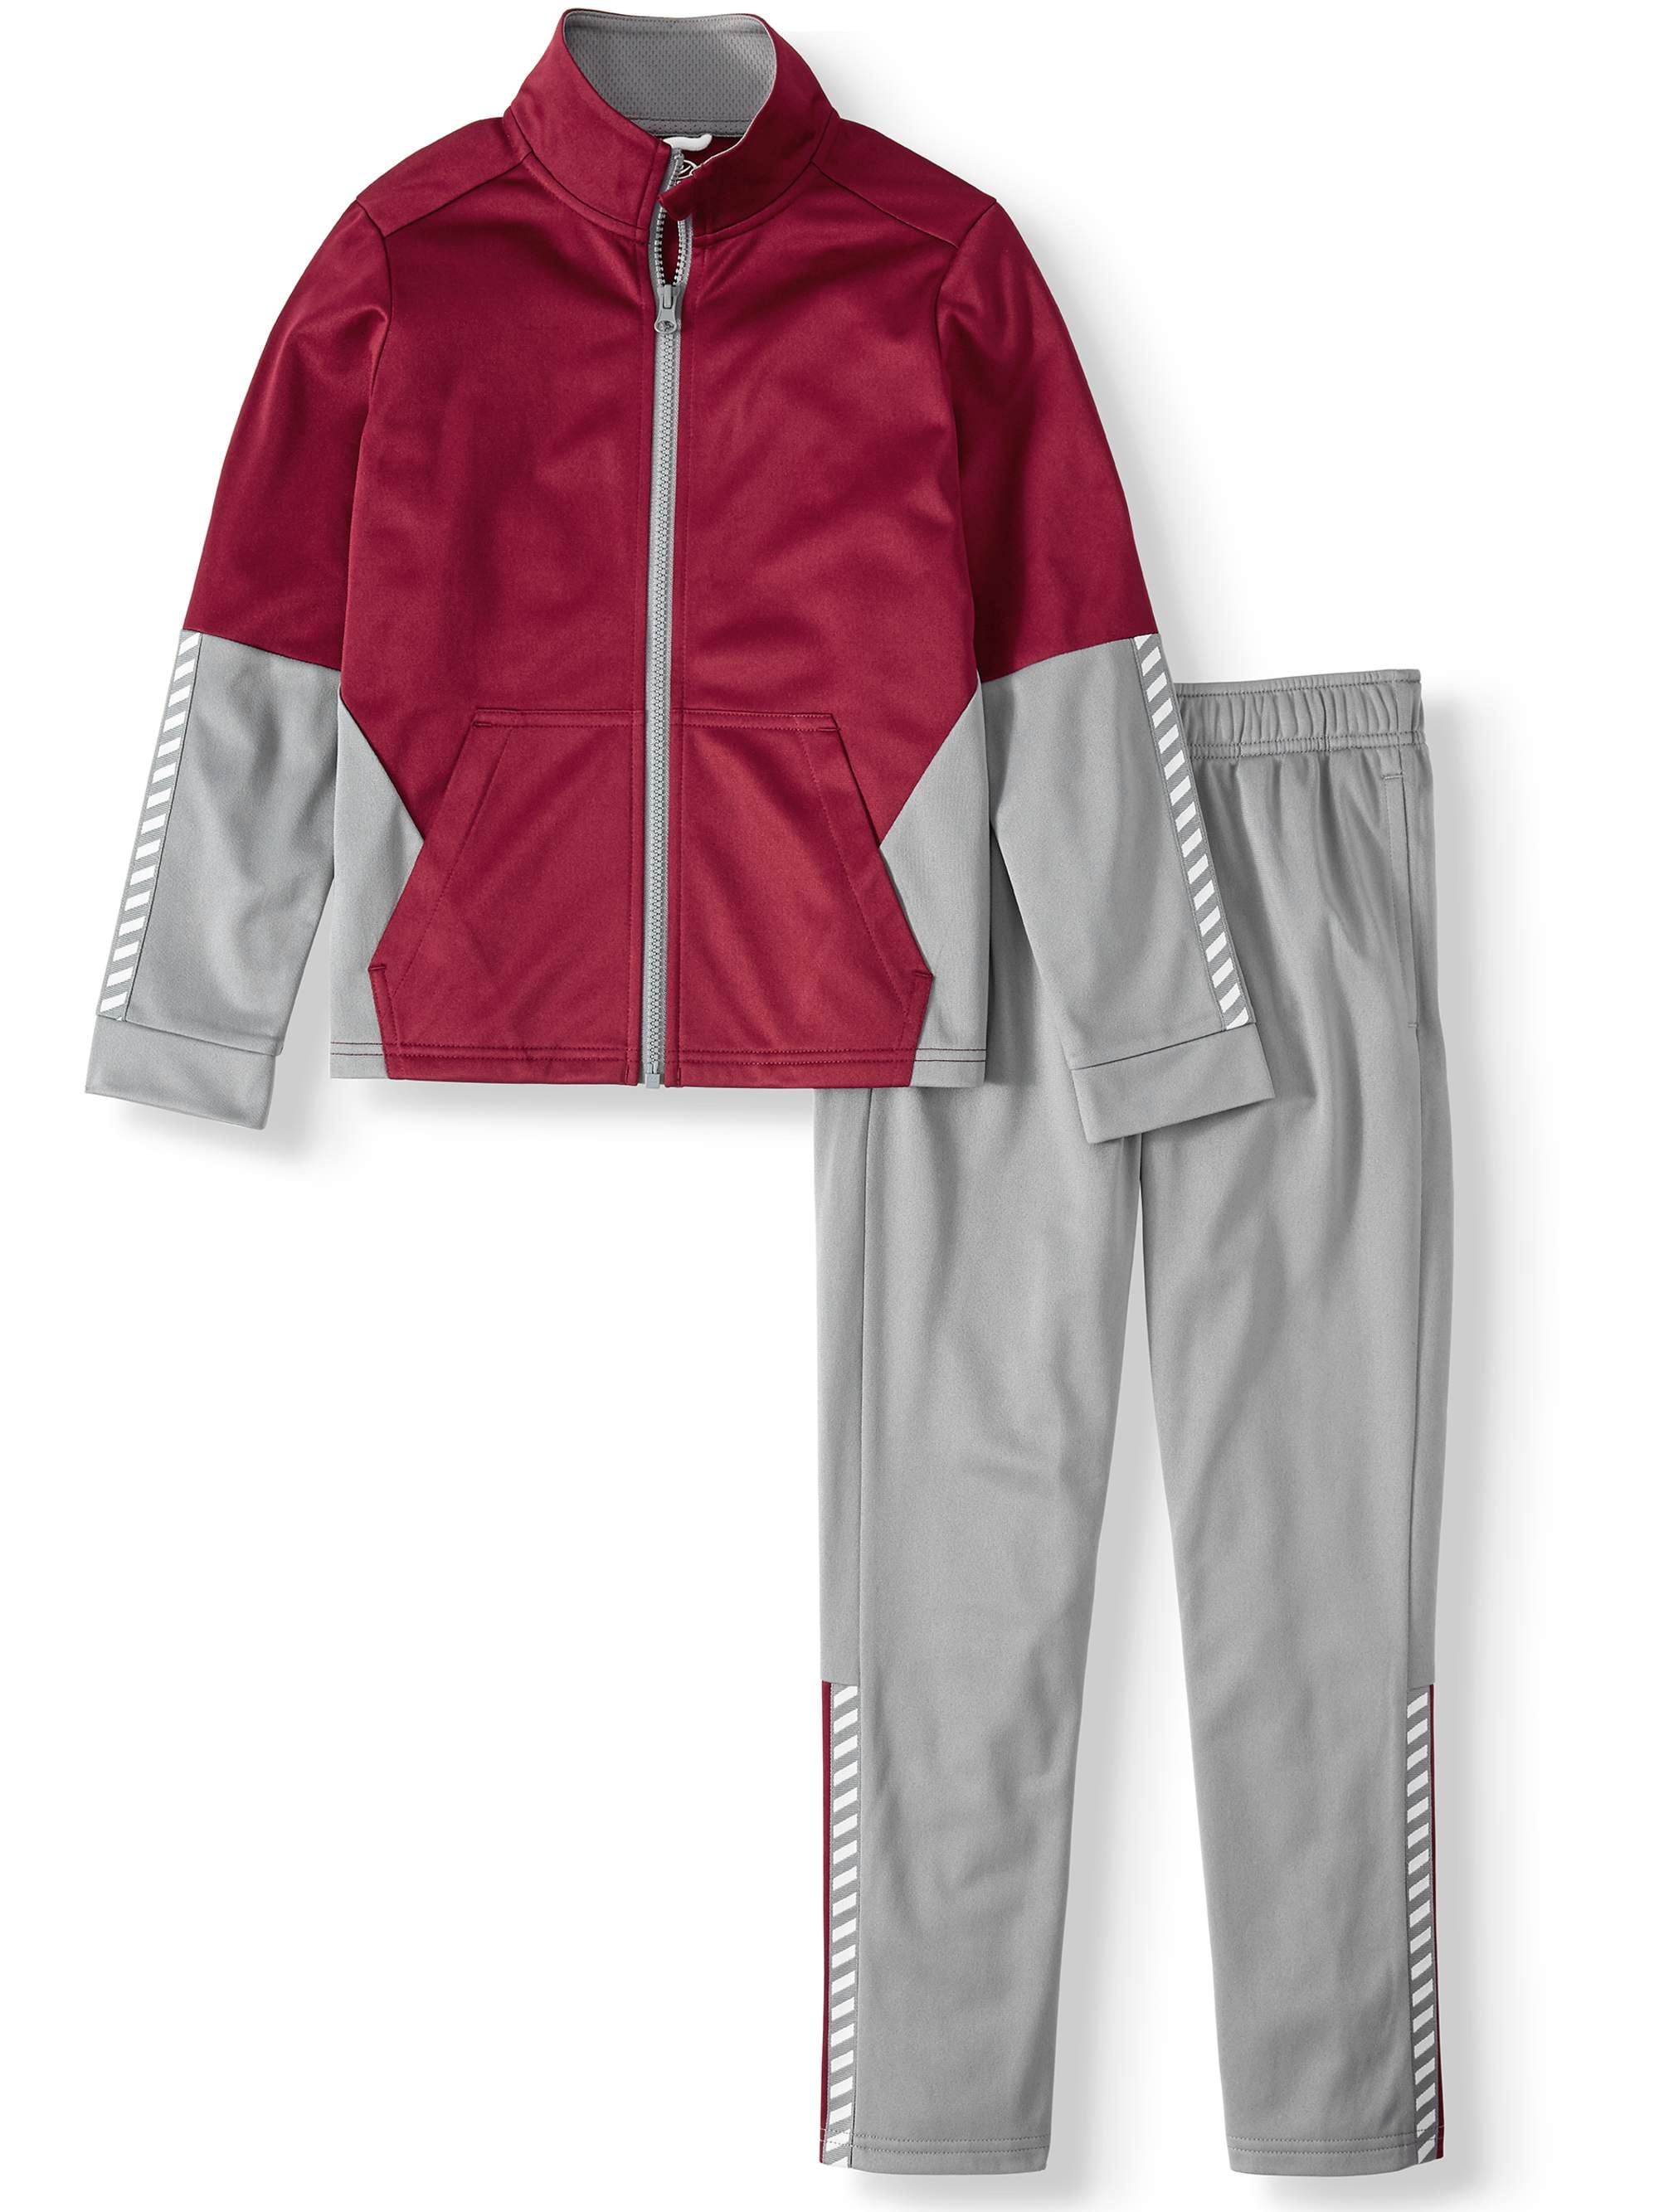 X-Future Mens Zipper Drawstring Jacket 2 Pieces Gym Pants Sweatsuit Outfit Set 